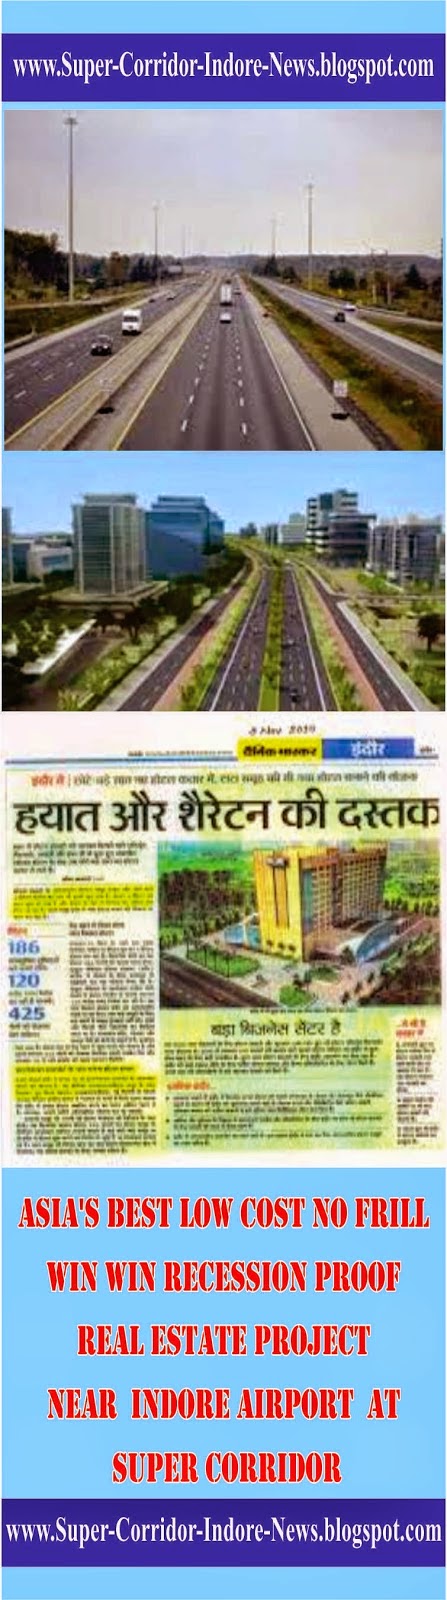 www.Super-Corridor-Indore-News.blogspot.com